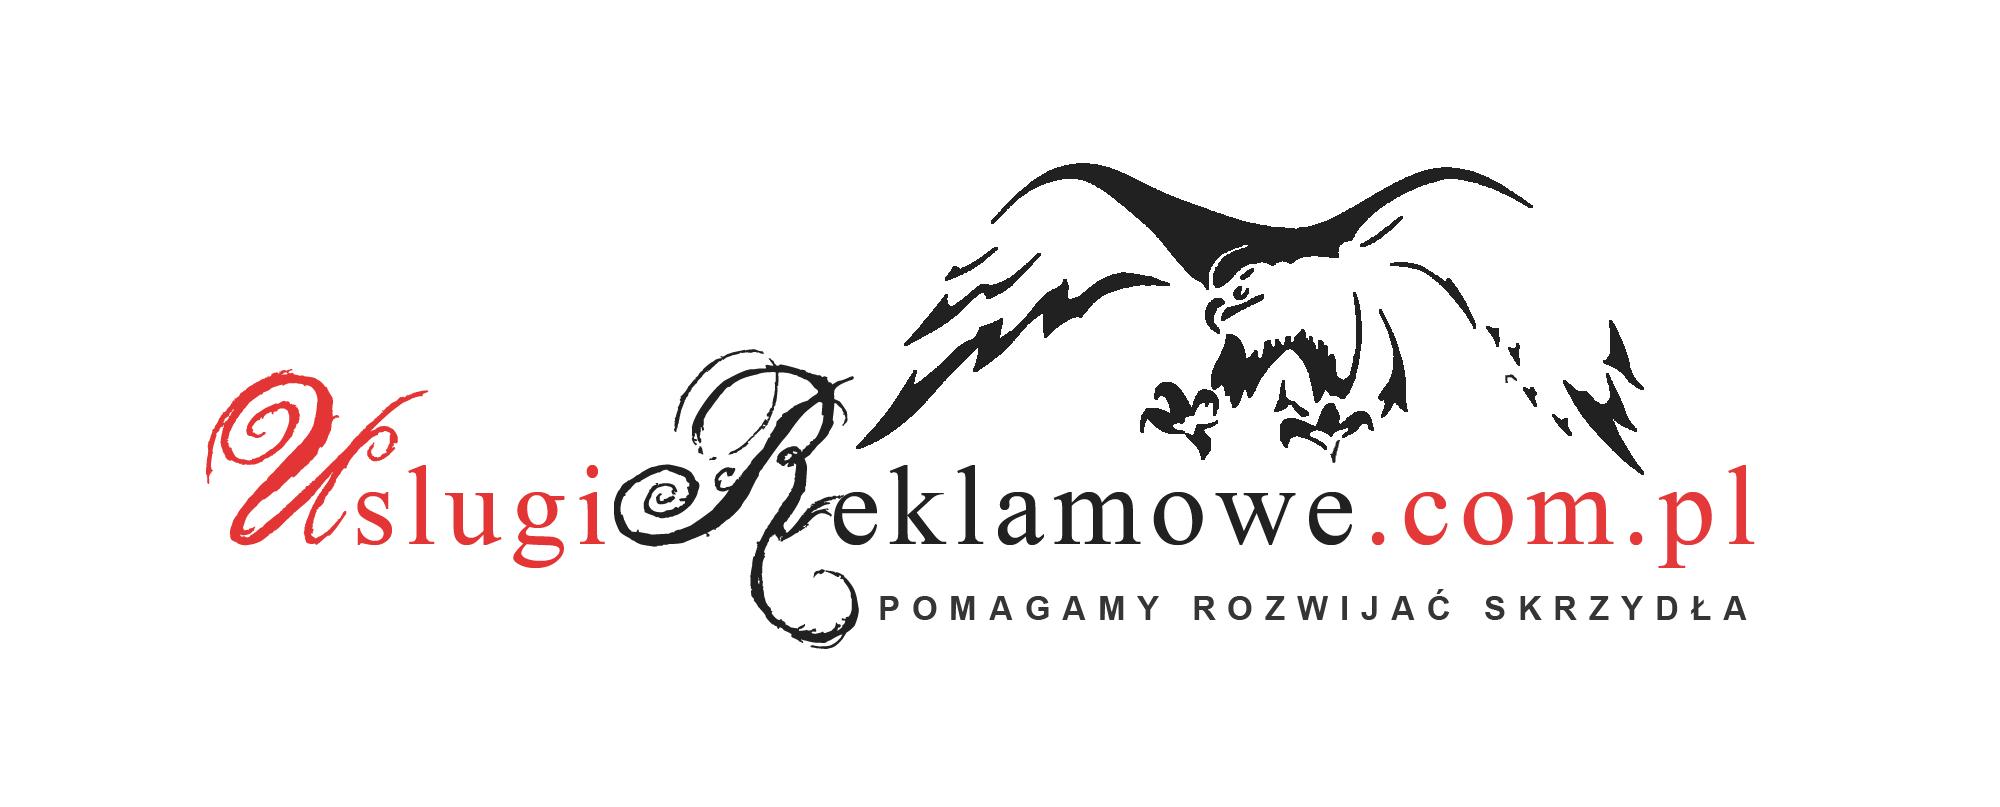 Plakaty Wrocław, Plakaty Kraków, Plakaty Poznań, Warszawa, Kraków, Poznań, Wrocław, Trójmiasto, mazowieckie